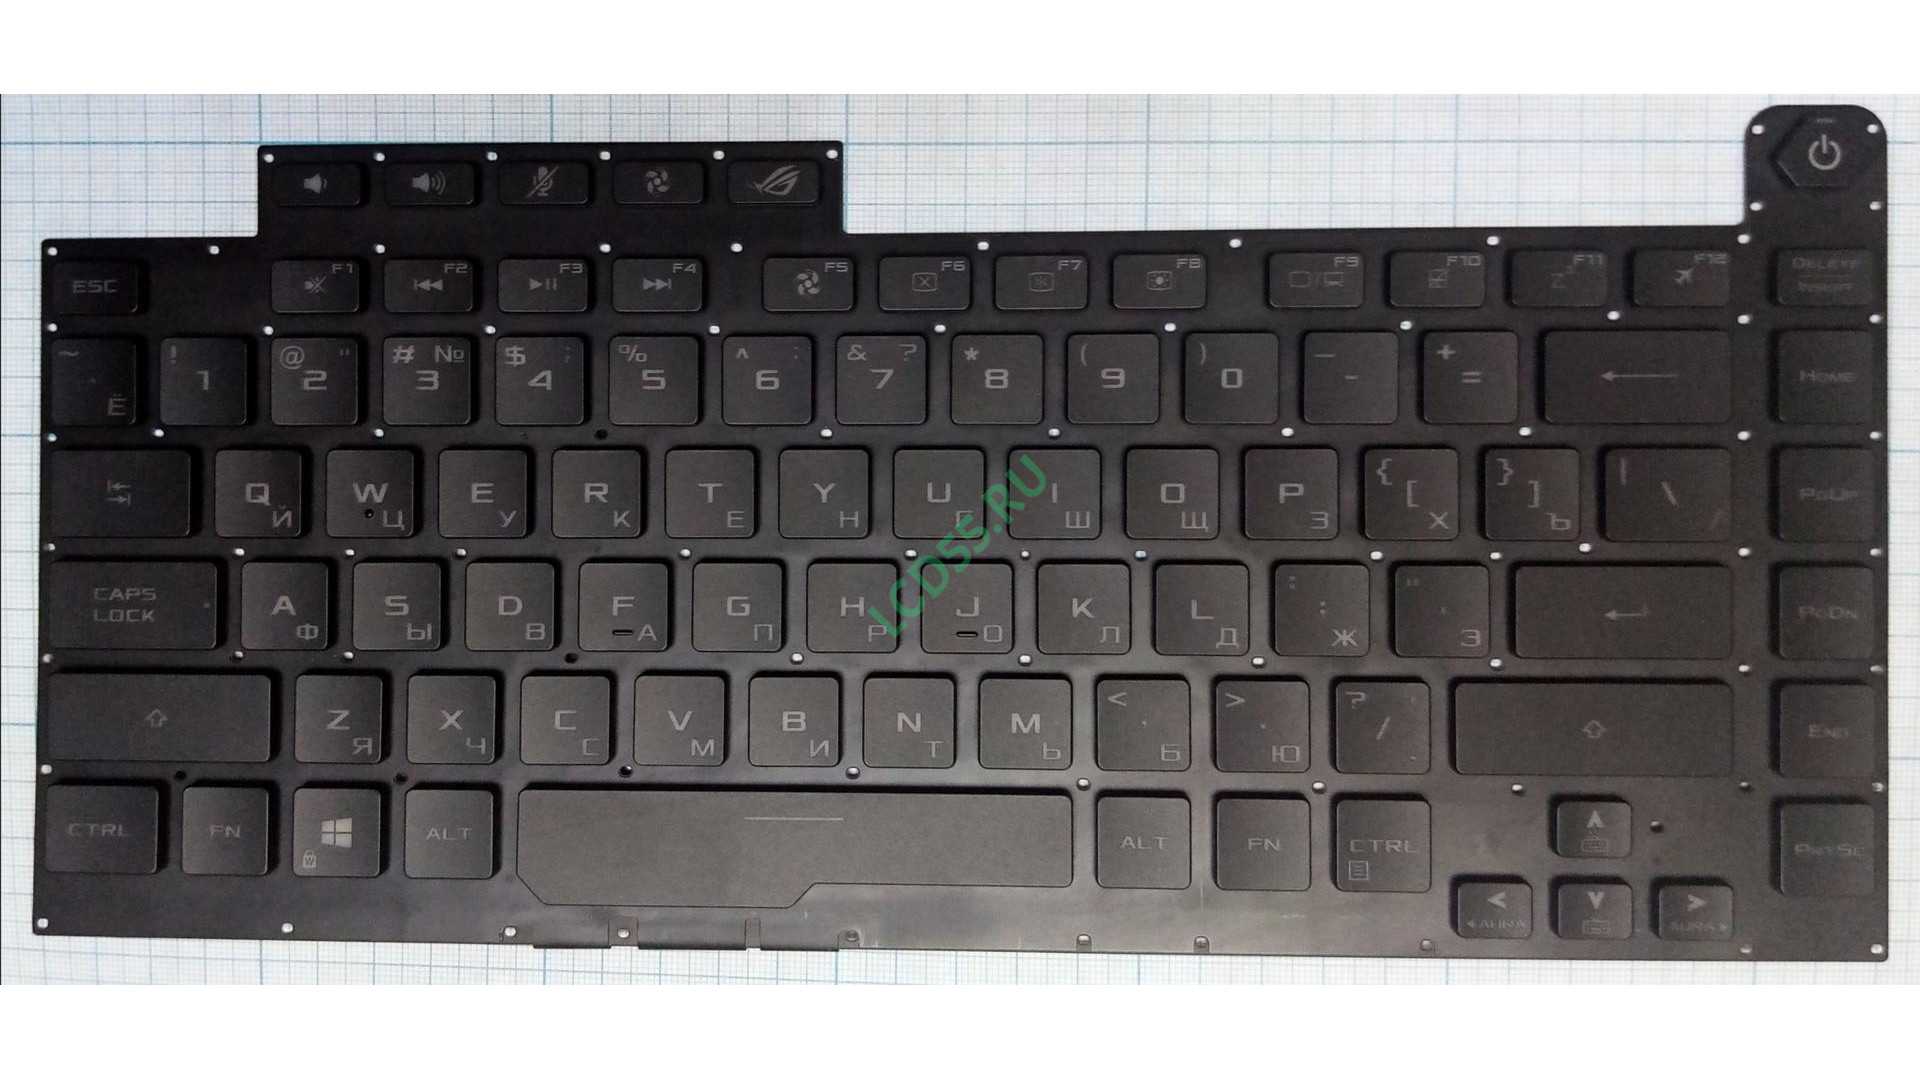 Клавиатура Asus Rog G531GW с подсветкой